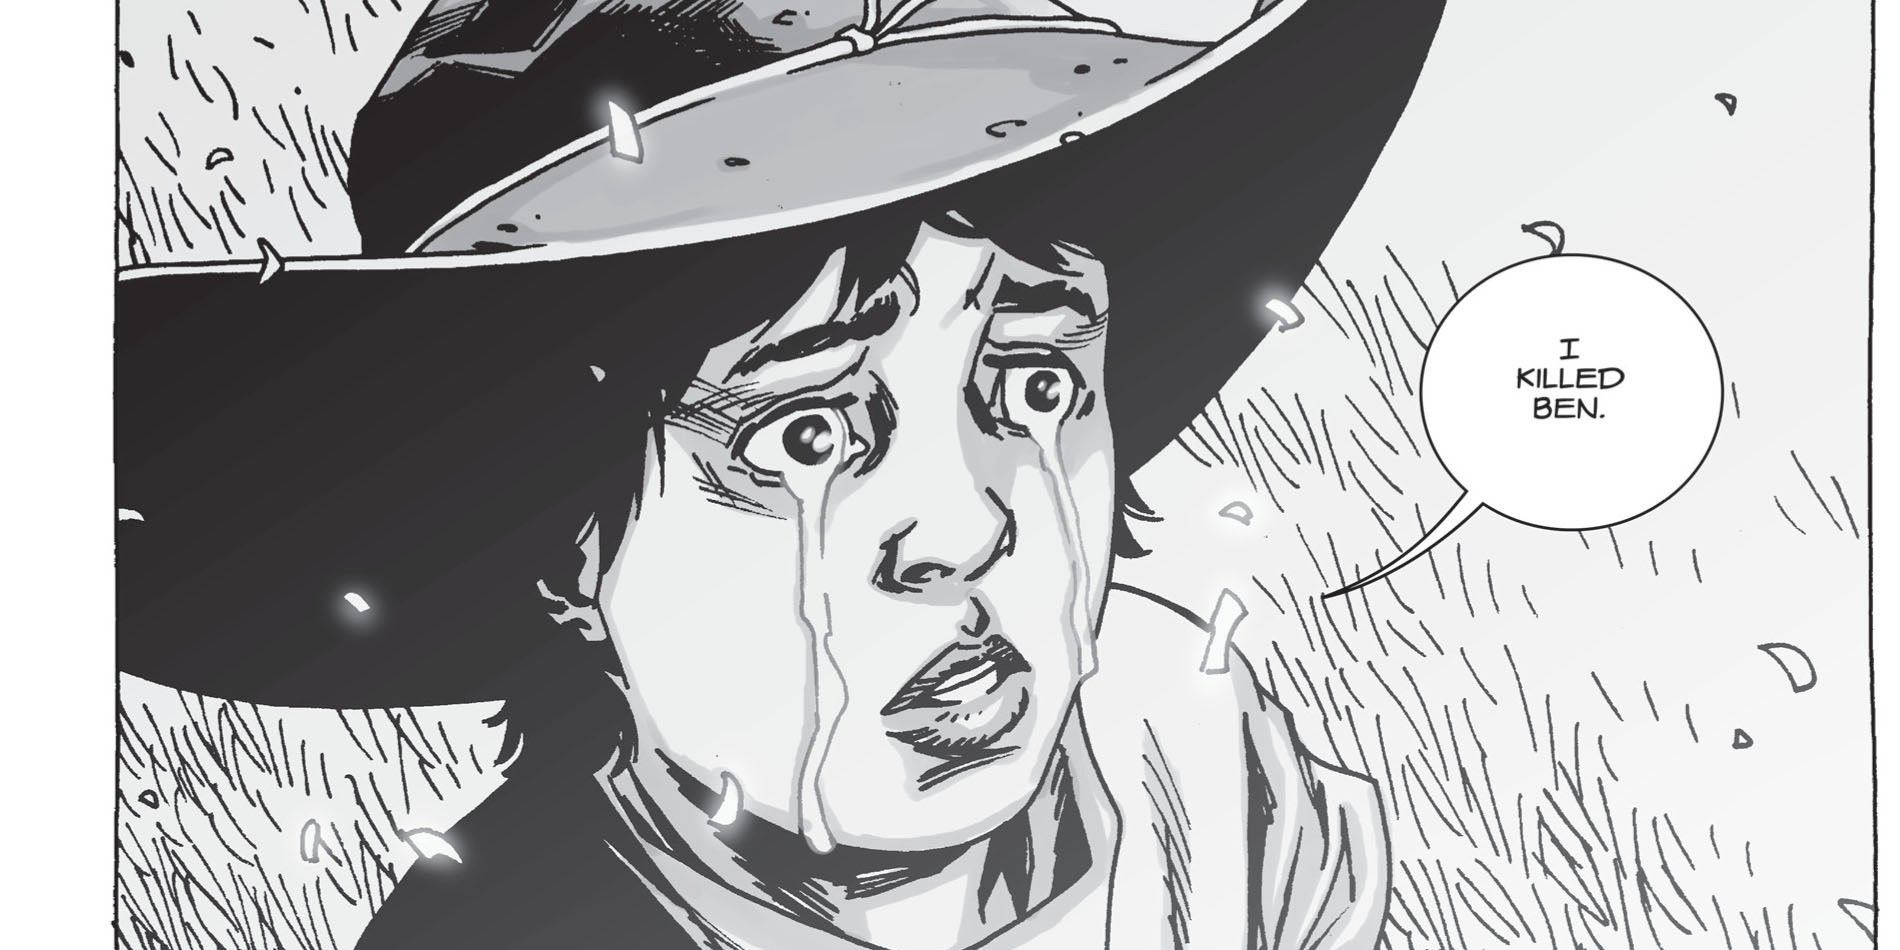 Carl Grimes in The Walking Dead comic